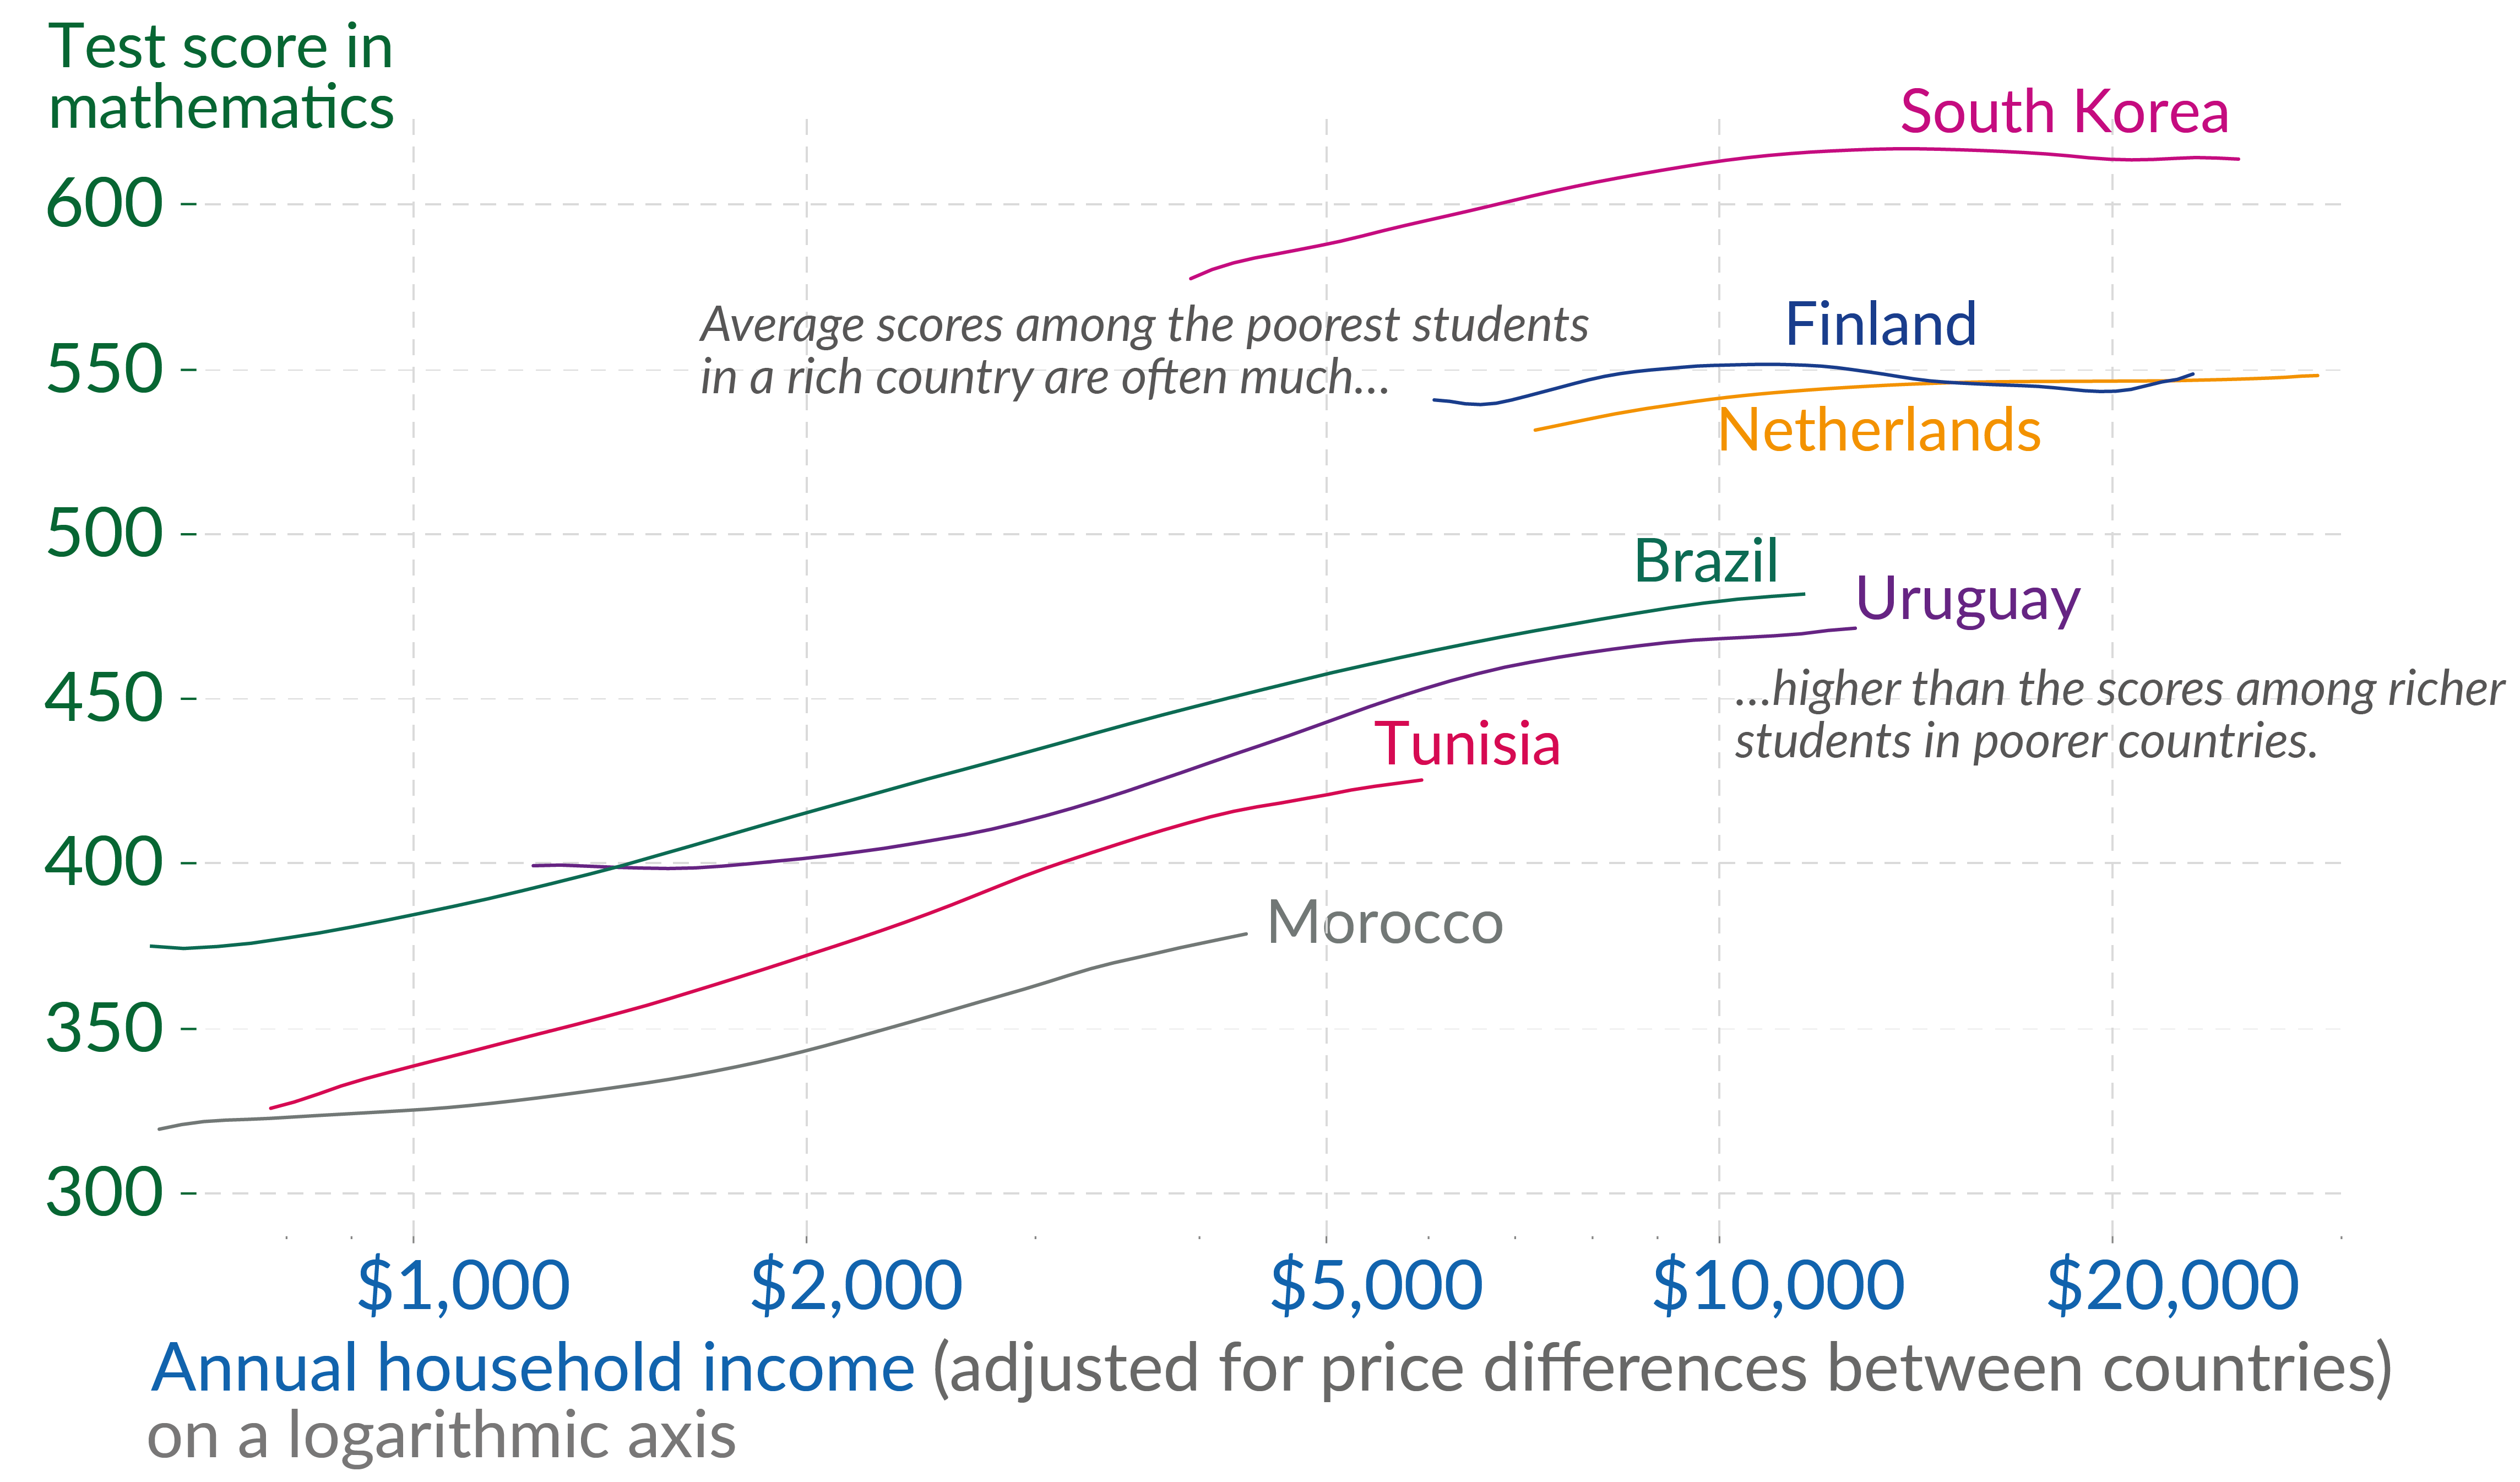 图表显示了不同国家按家庭收入划分的平均数学考试成绩。